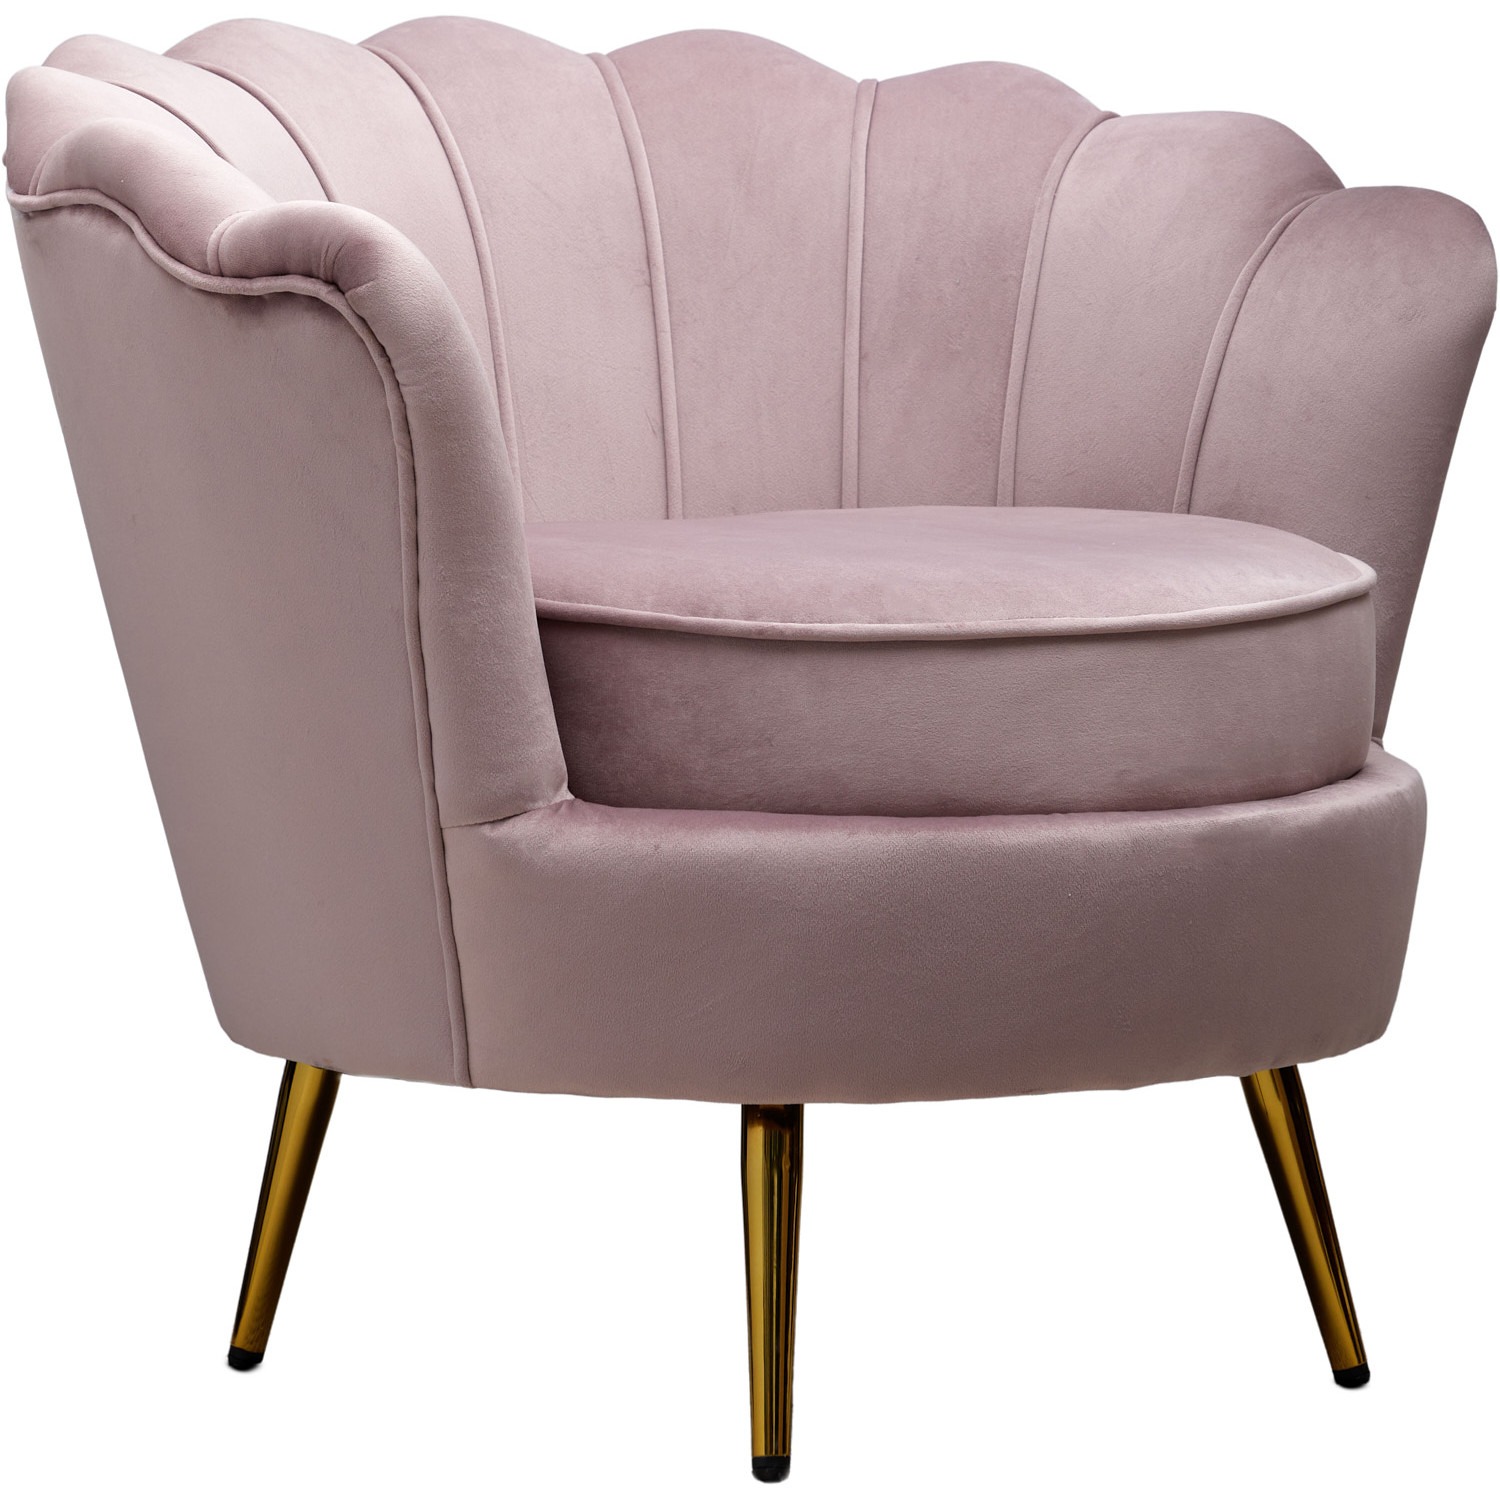 Кресло Glasar Флоренция розовое 78х77х65 см кресло glasar 61x61x71см бежевое